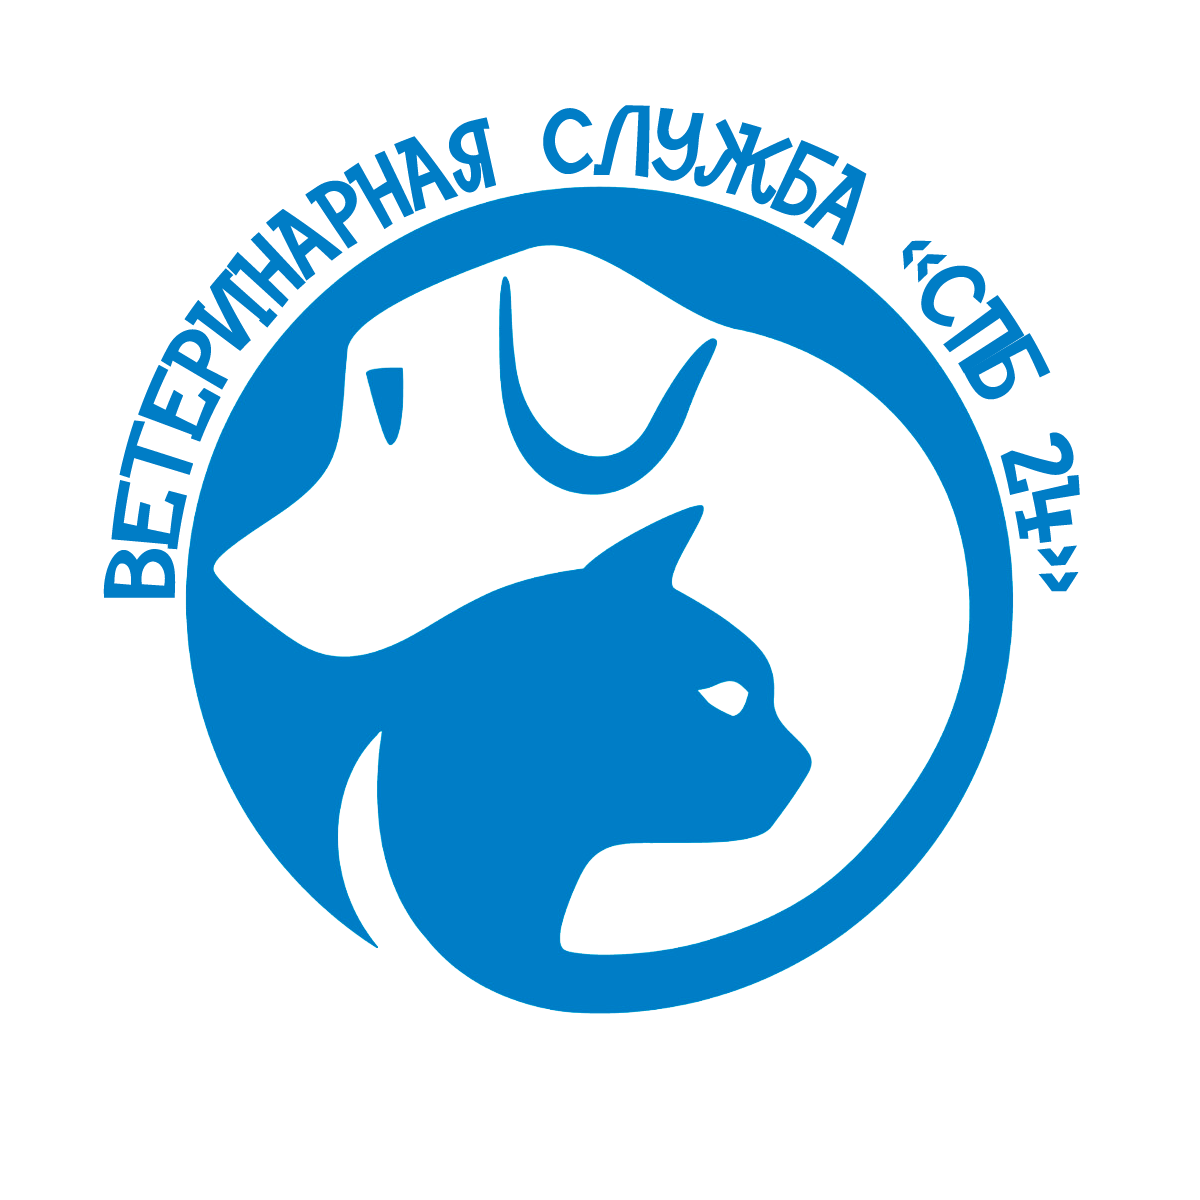 Ветеринарная грибоедова. Логотип ветклиники. Эмблема ветеринарной клиники. Ветеринарная клиника лого. Логотипы ветеринарных лечебниц.